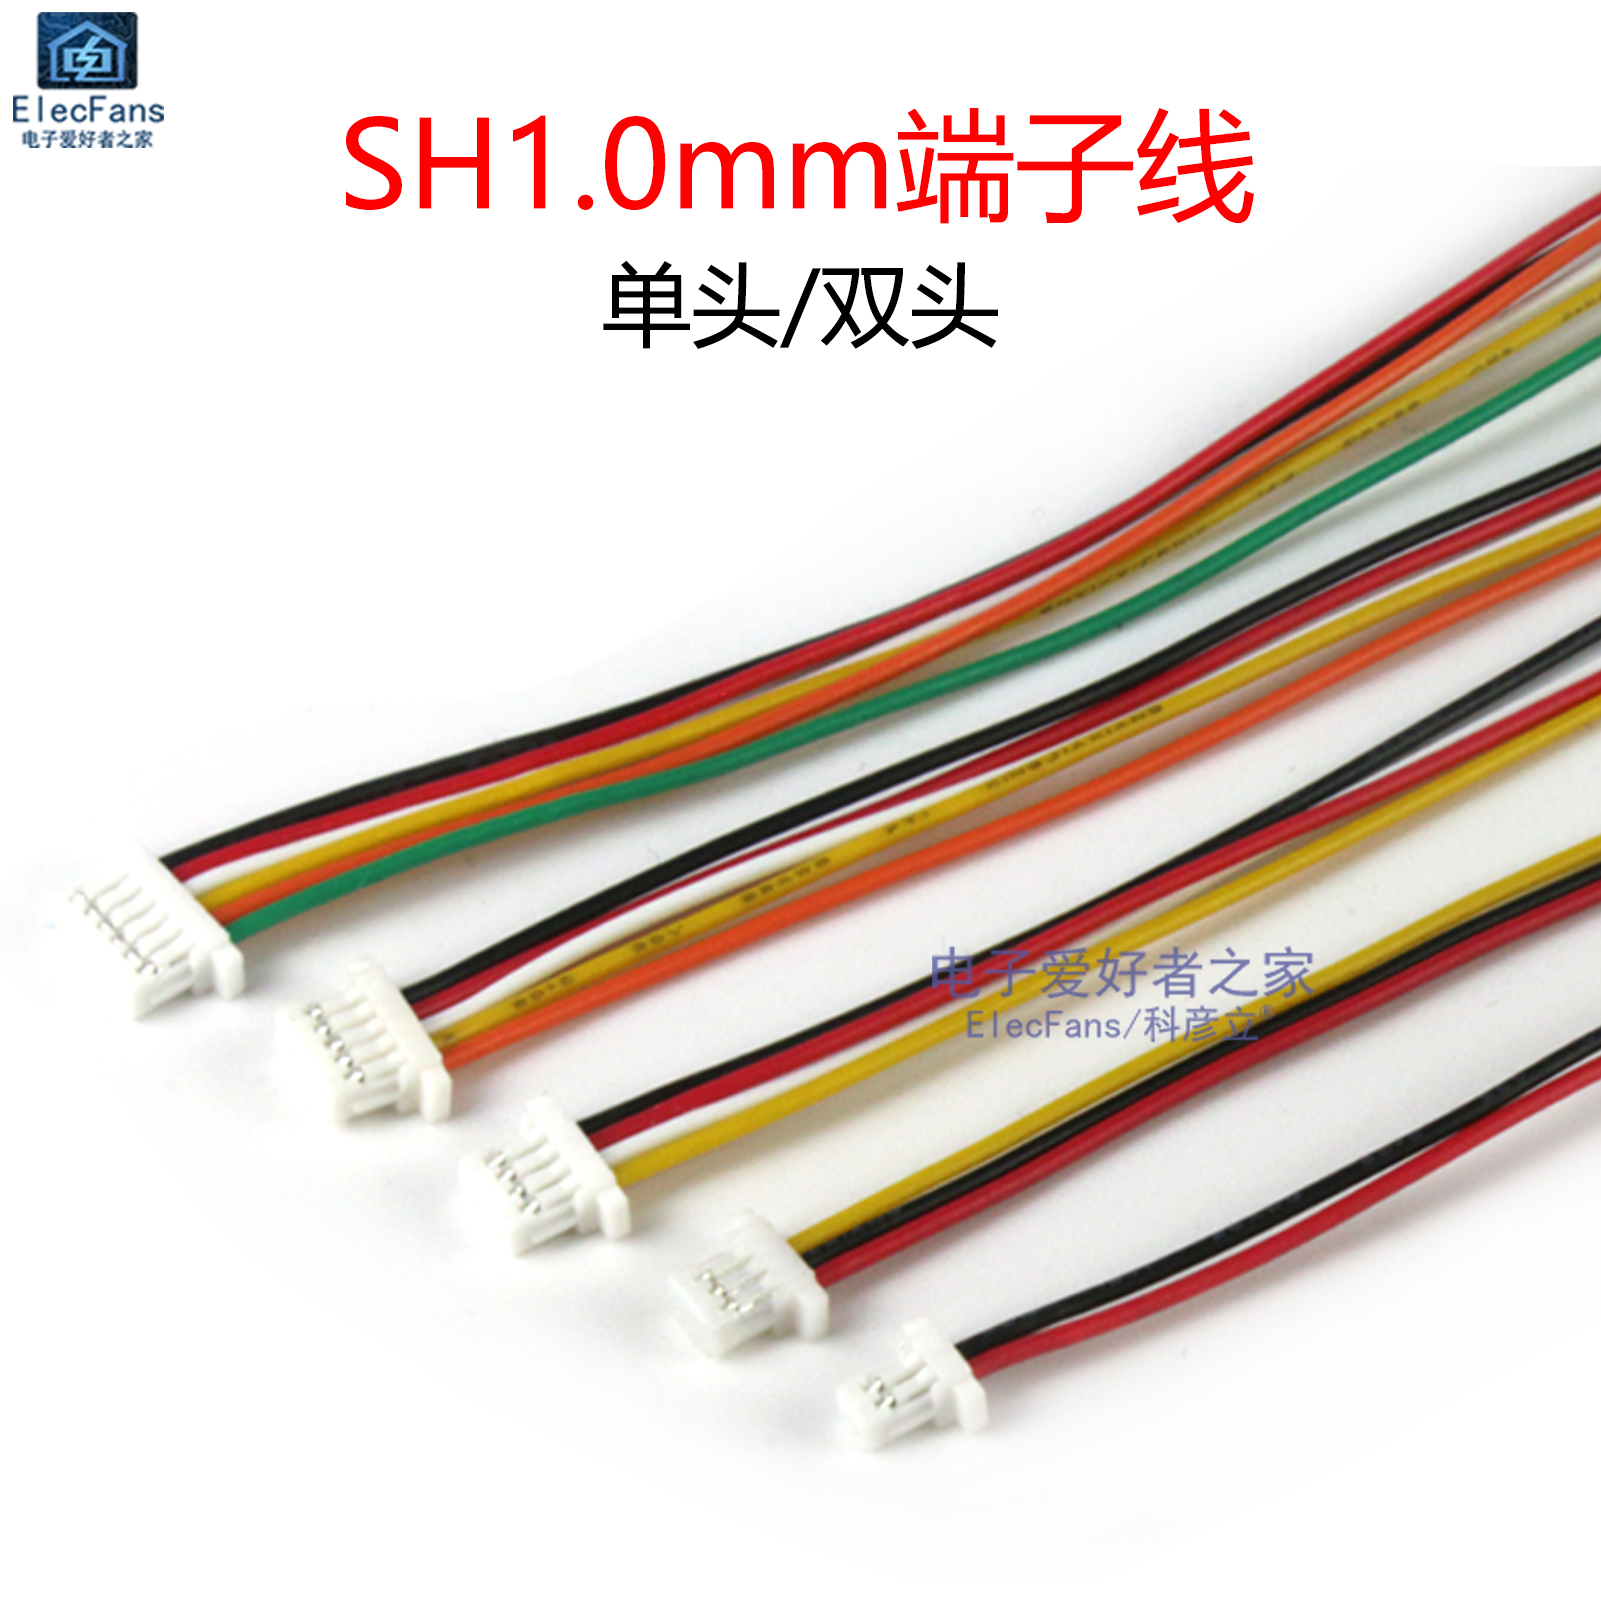 SH1.0mm端子线1mm间距电子线